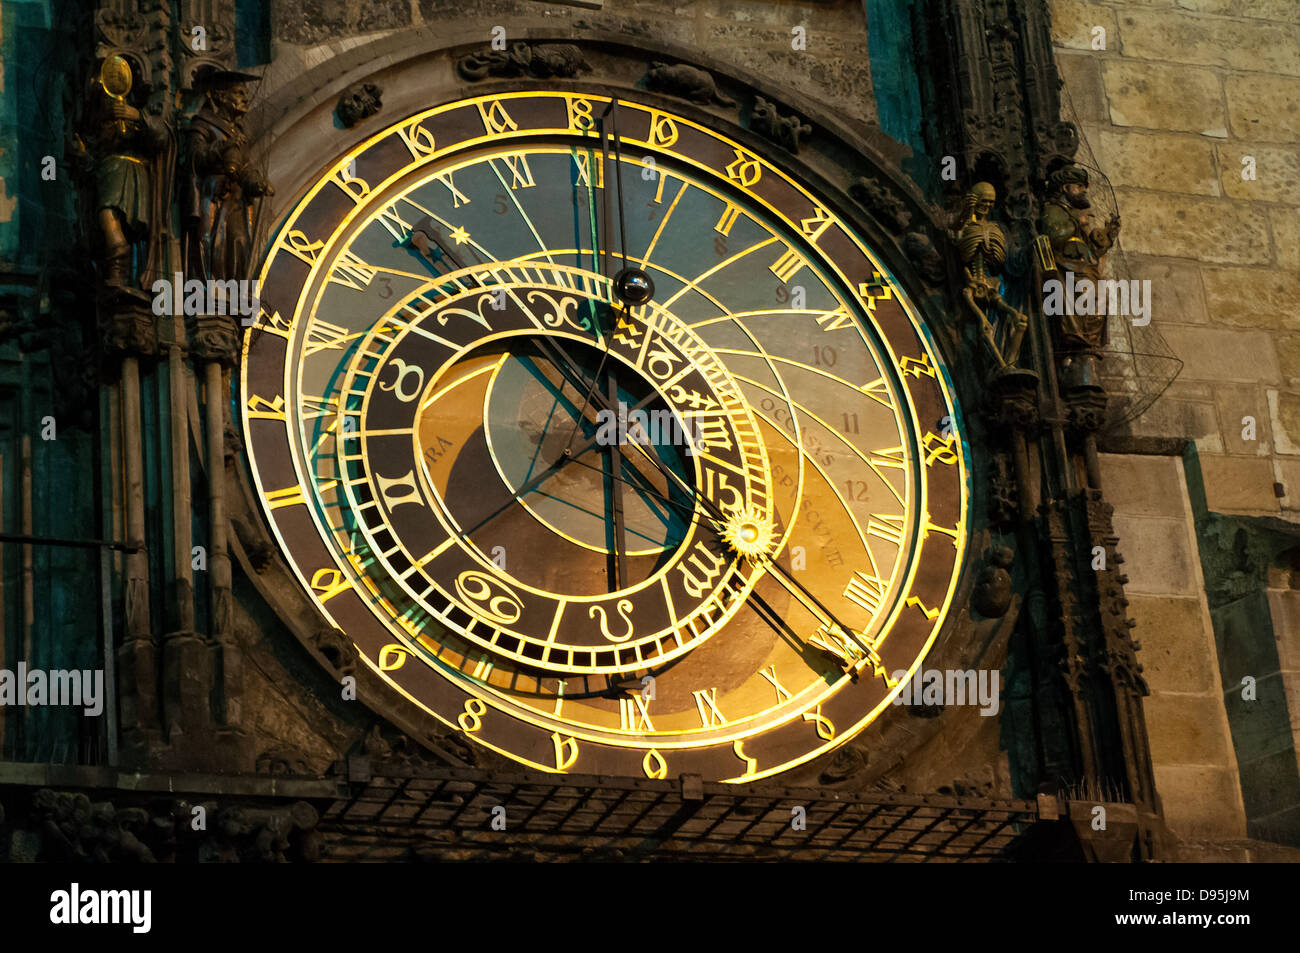 Horloge astronomique de Prague, l'Orloj, dans la vieille ville de Prague Banque D'Images